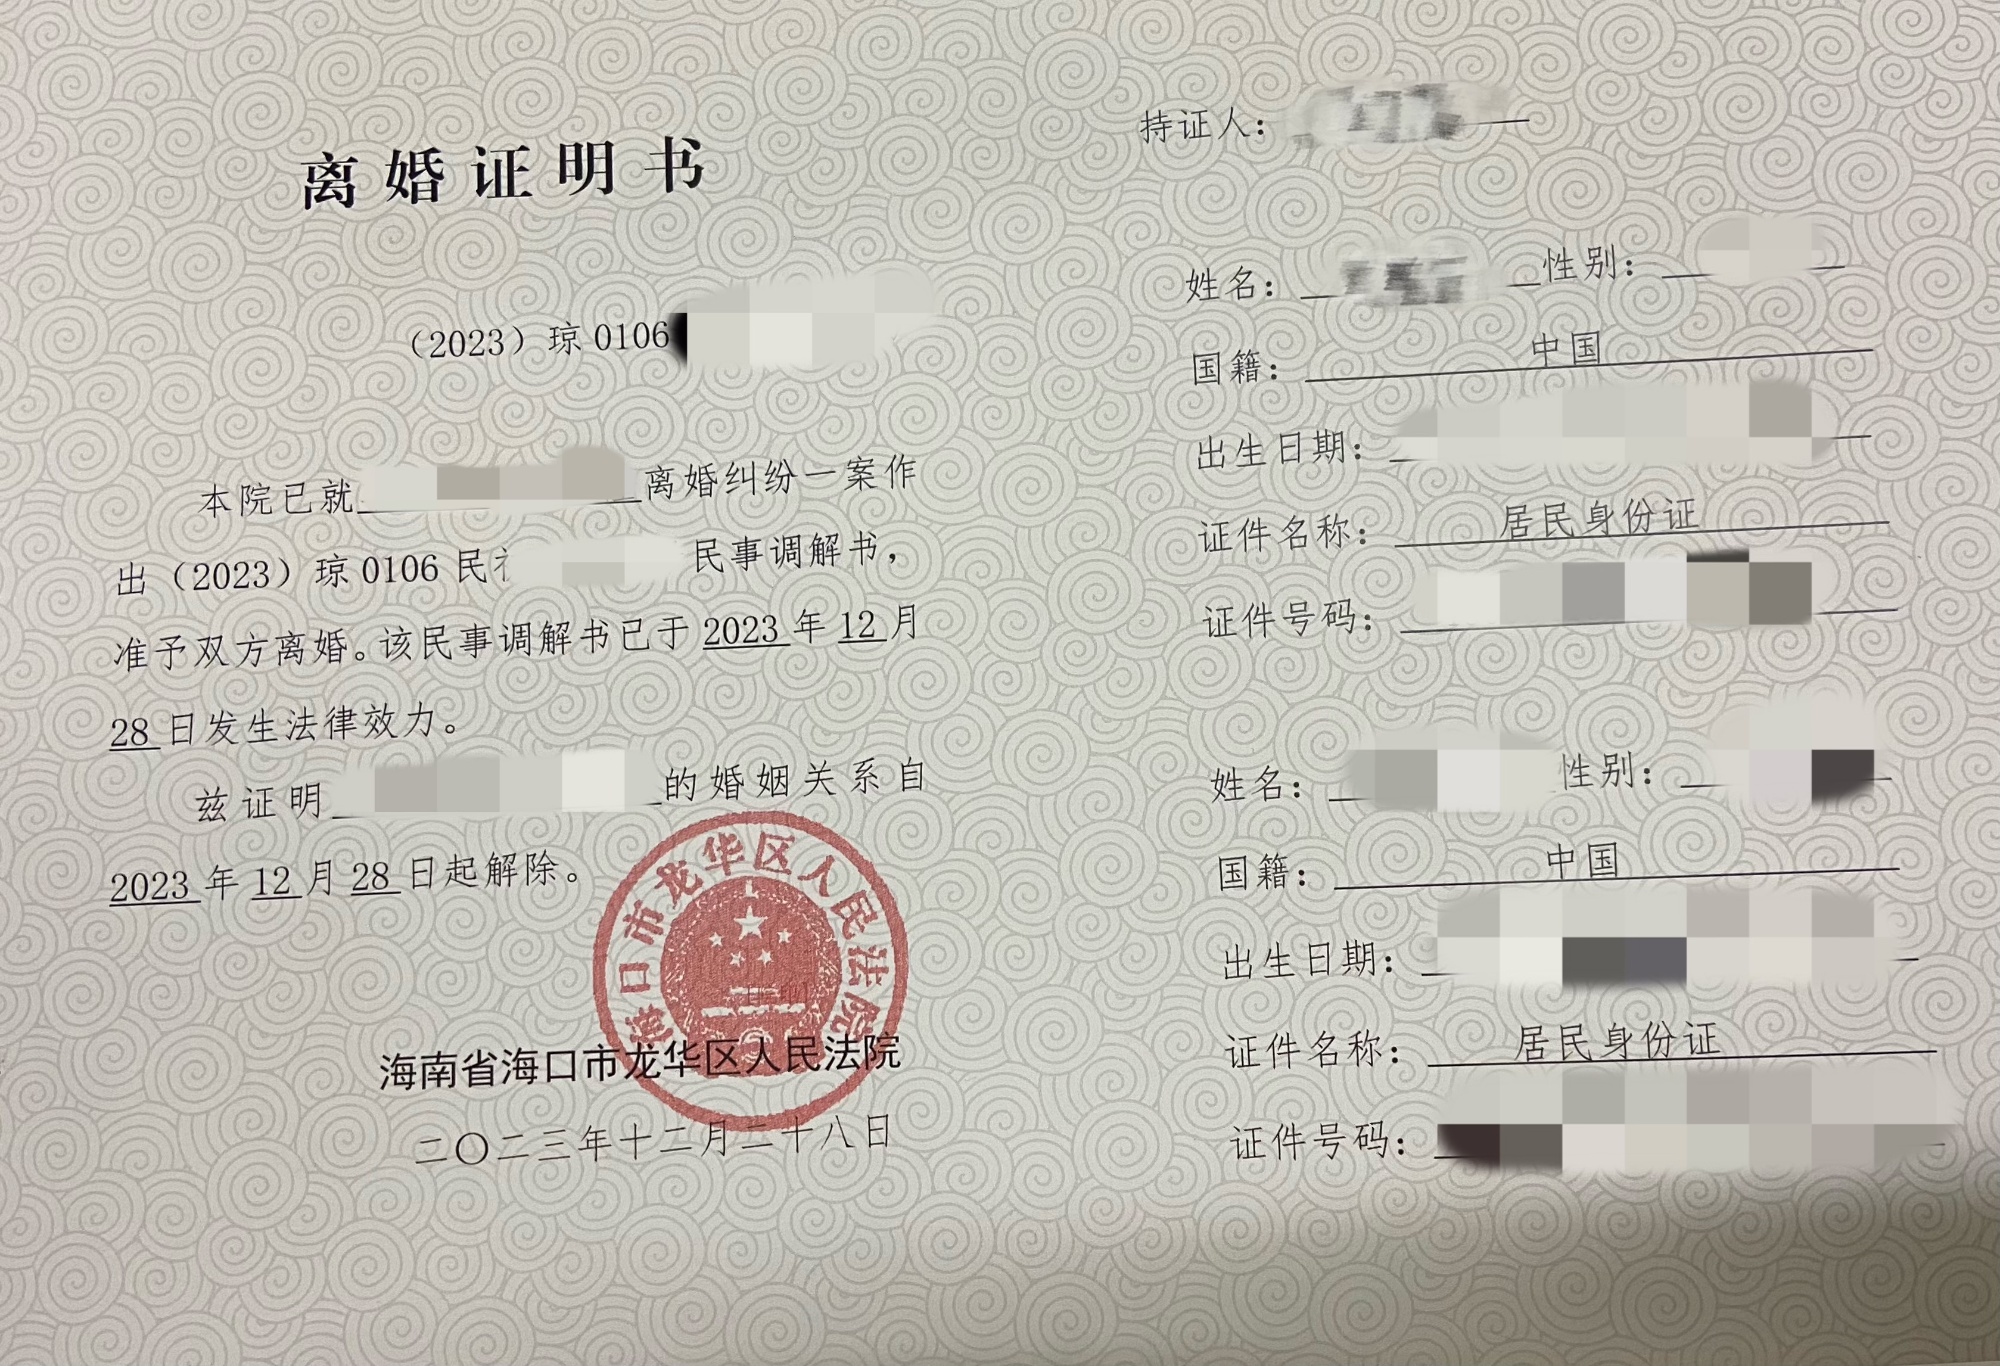 海南省发放首份统一制式《离婚证明书》